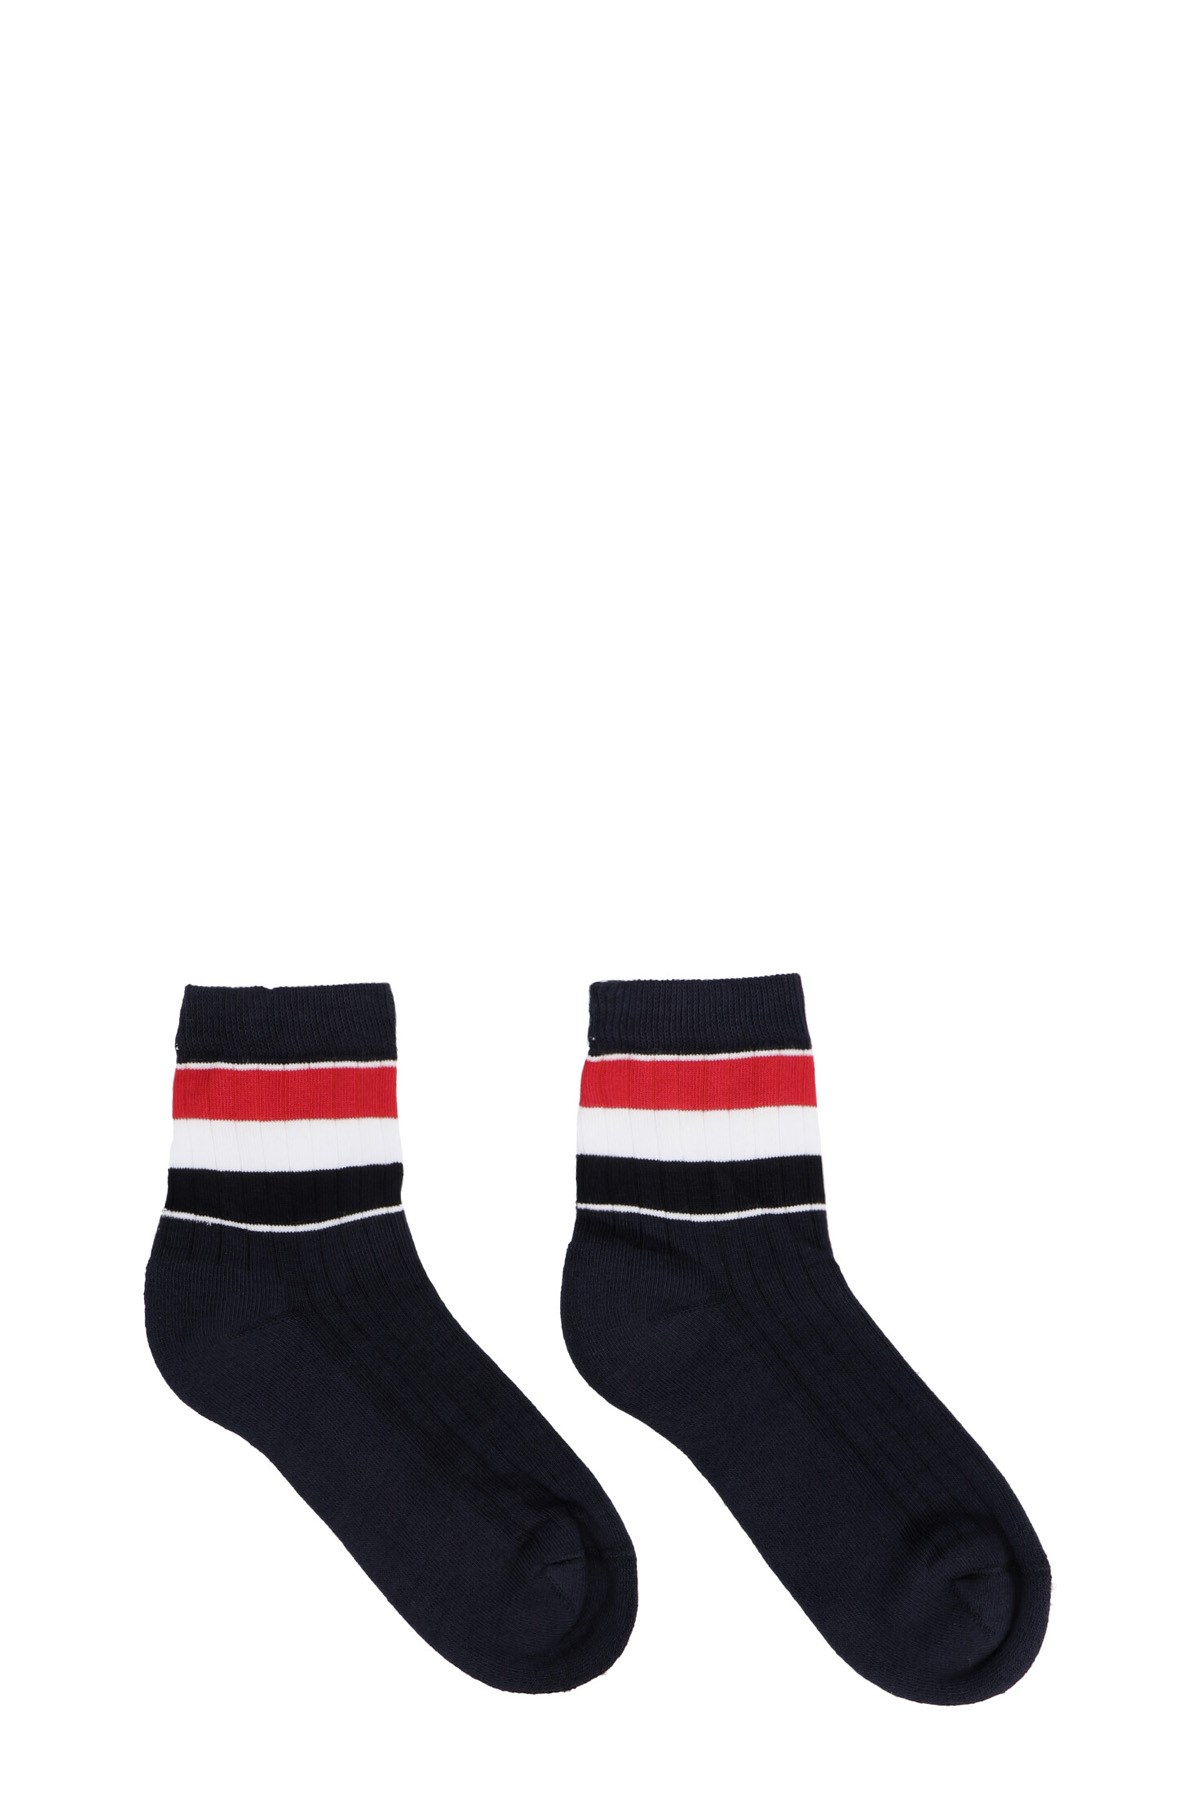 THOM BROWNE 'Athletic’ Socks